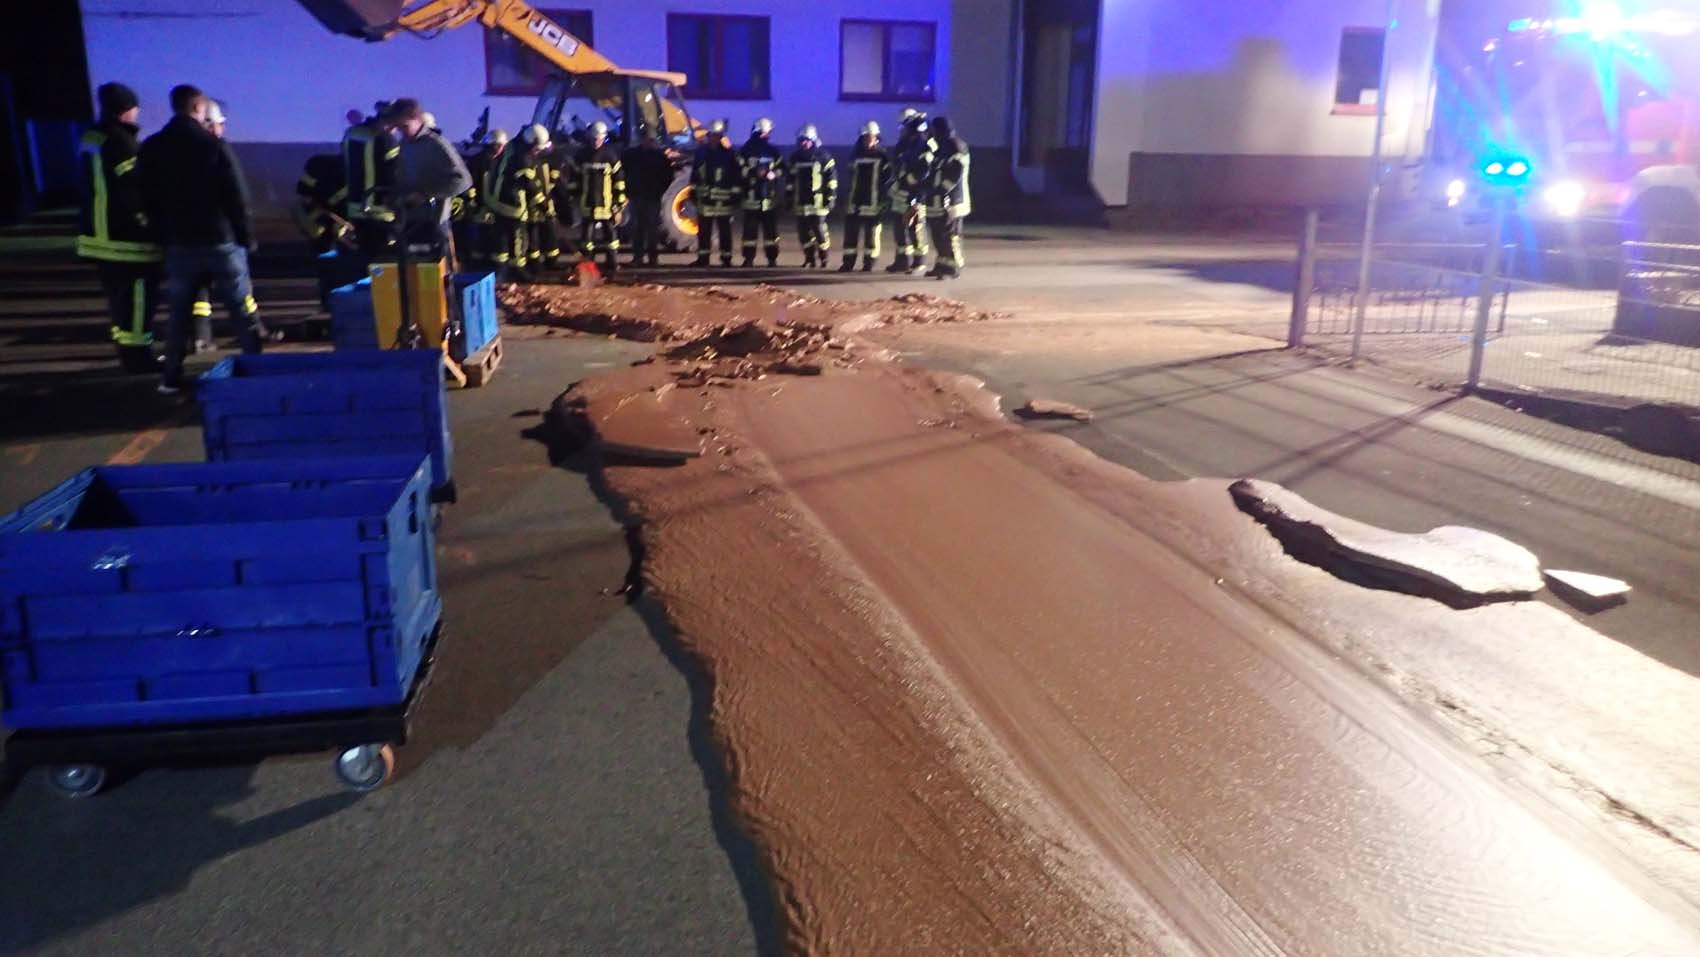 Una fuga de chocolate inundó una vía en Alemania (fotos)